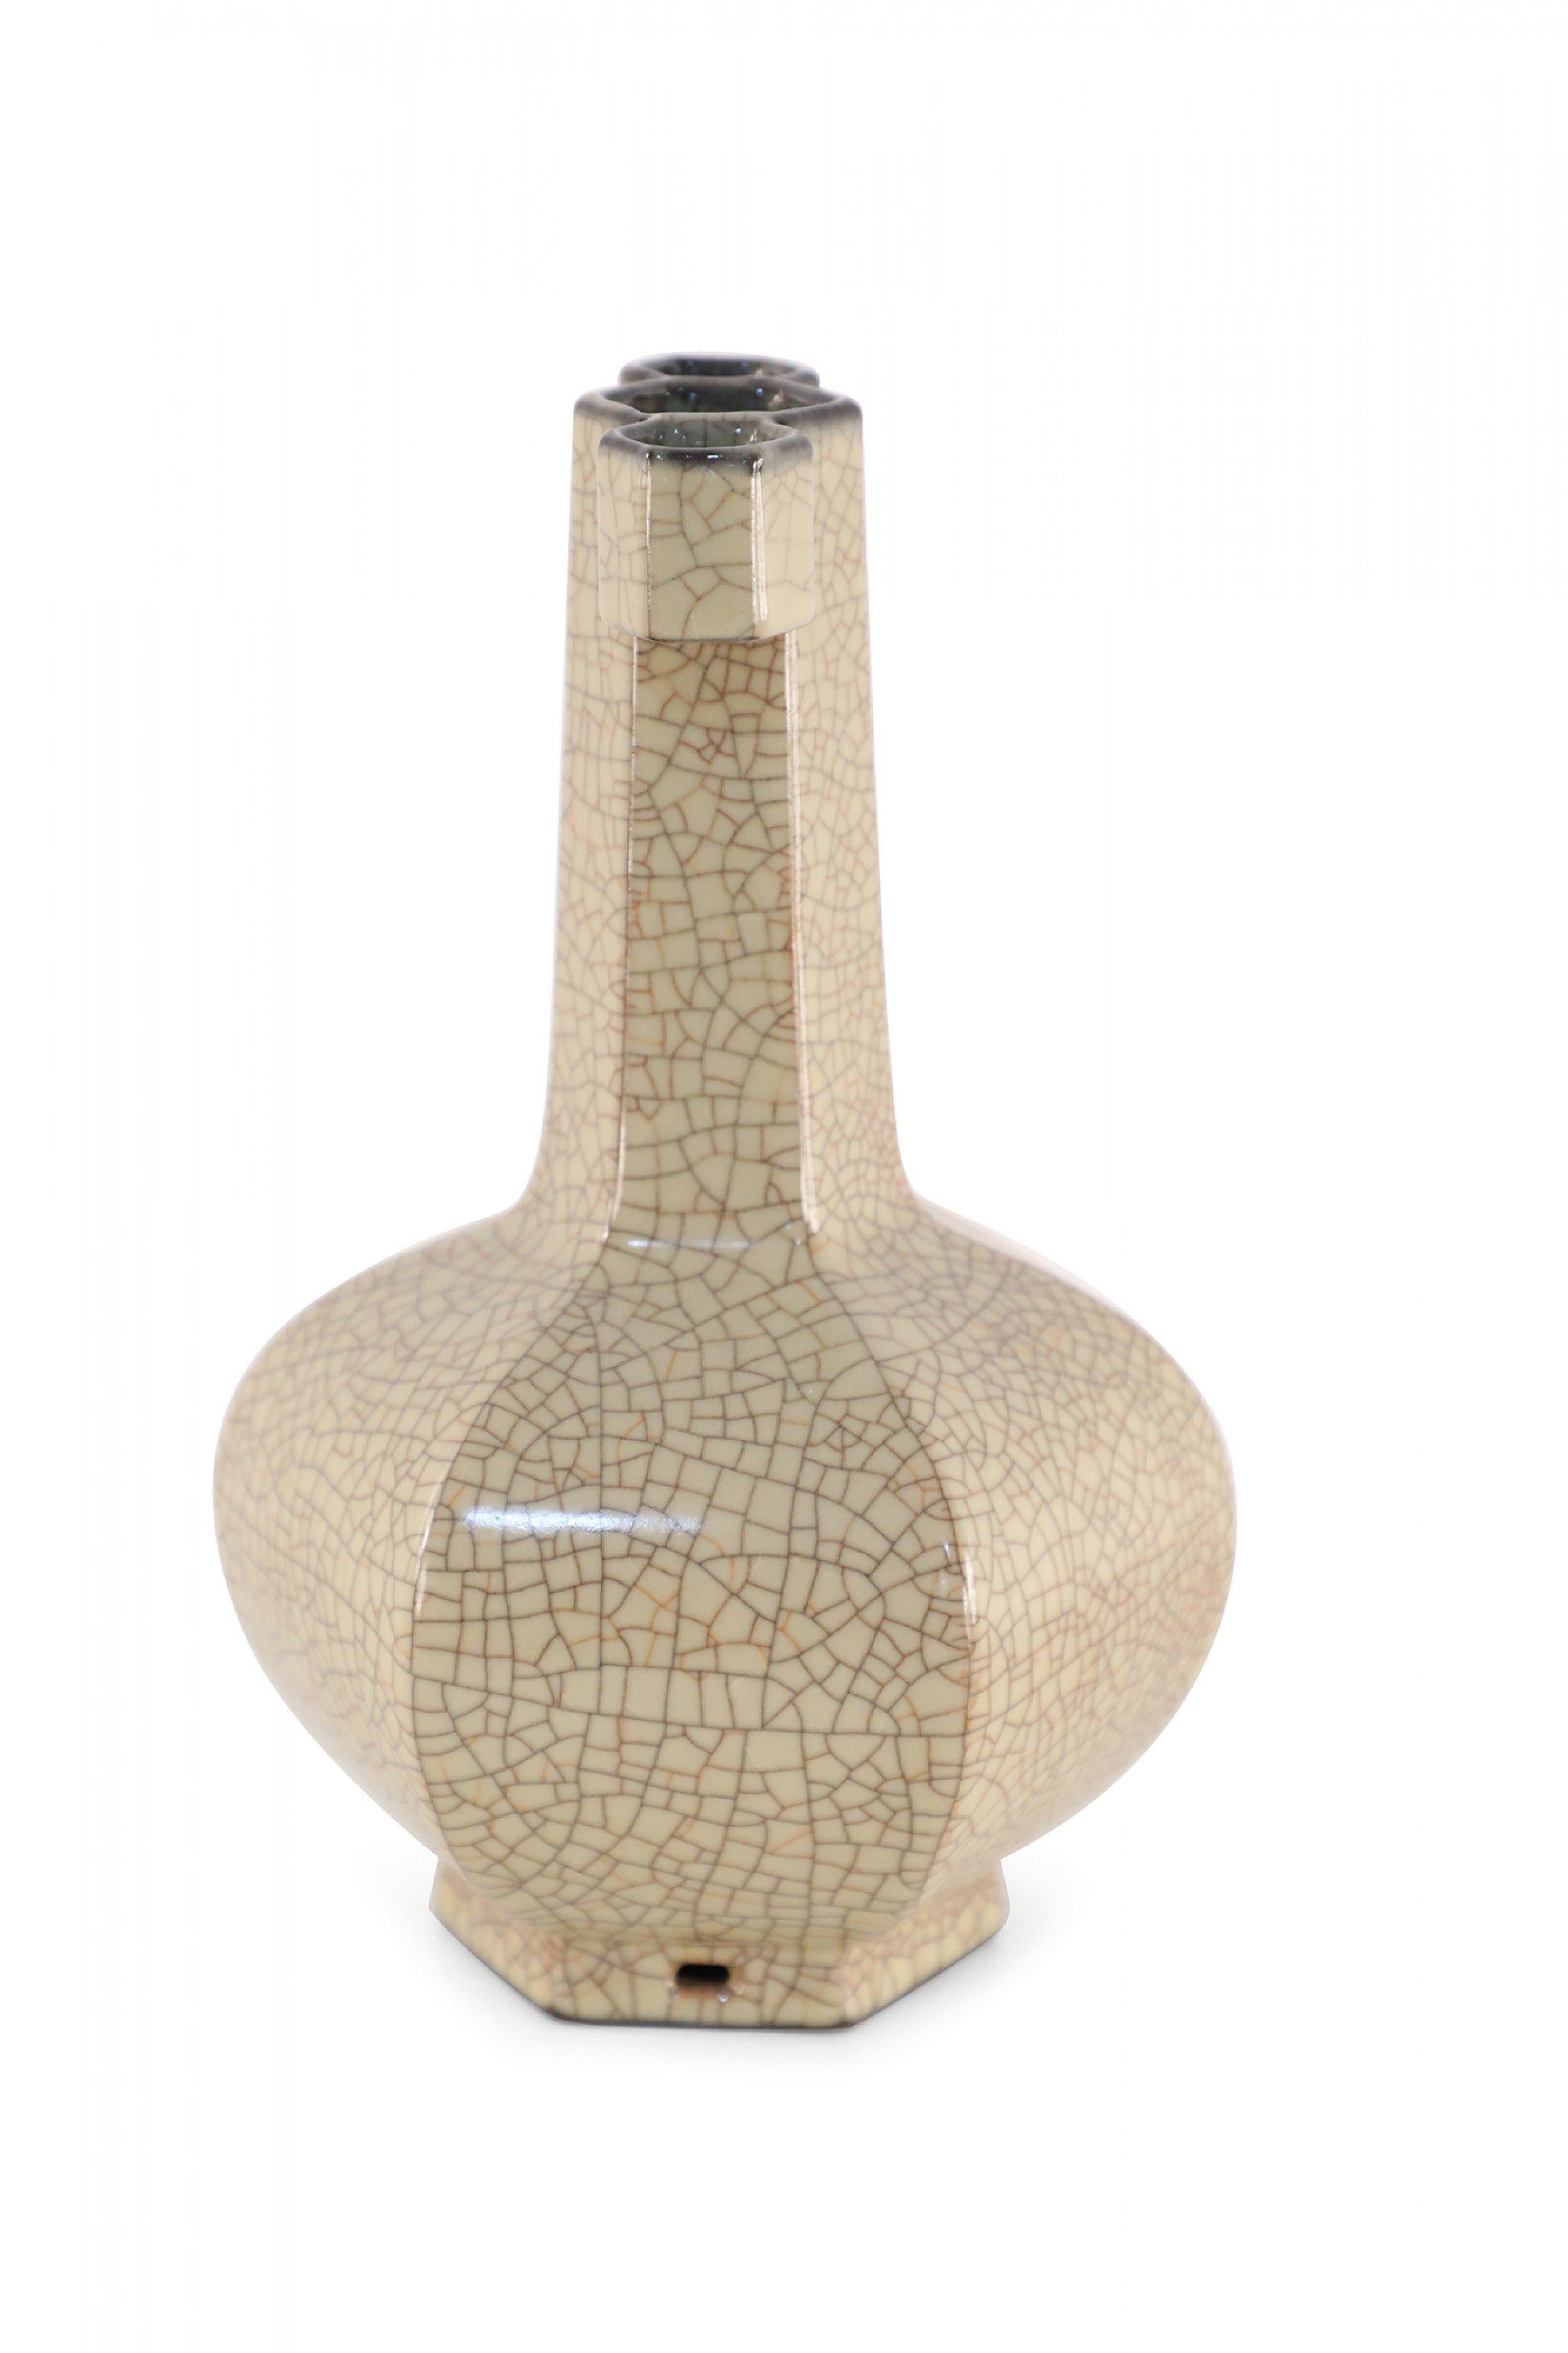 Vase chinois à six côtés, en porcelaine beige craquelée, fabriqué dans un style typique du four officiel de la dynastie Song pendant la période des Song du Sud et agrémenté de deux oreilles en forme d'ergots le long du col.
 